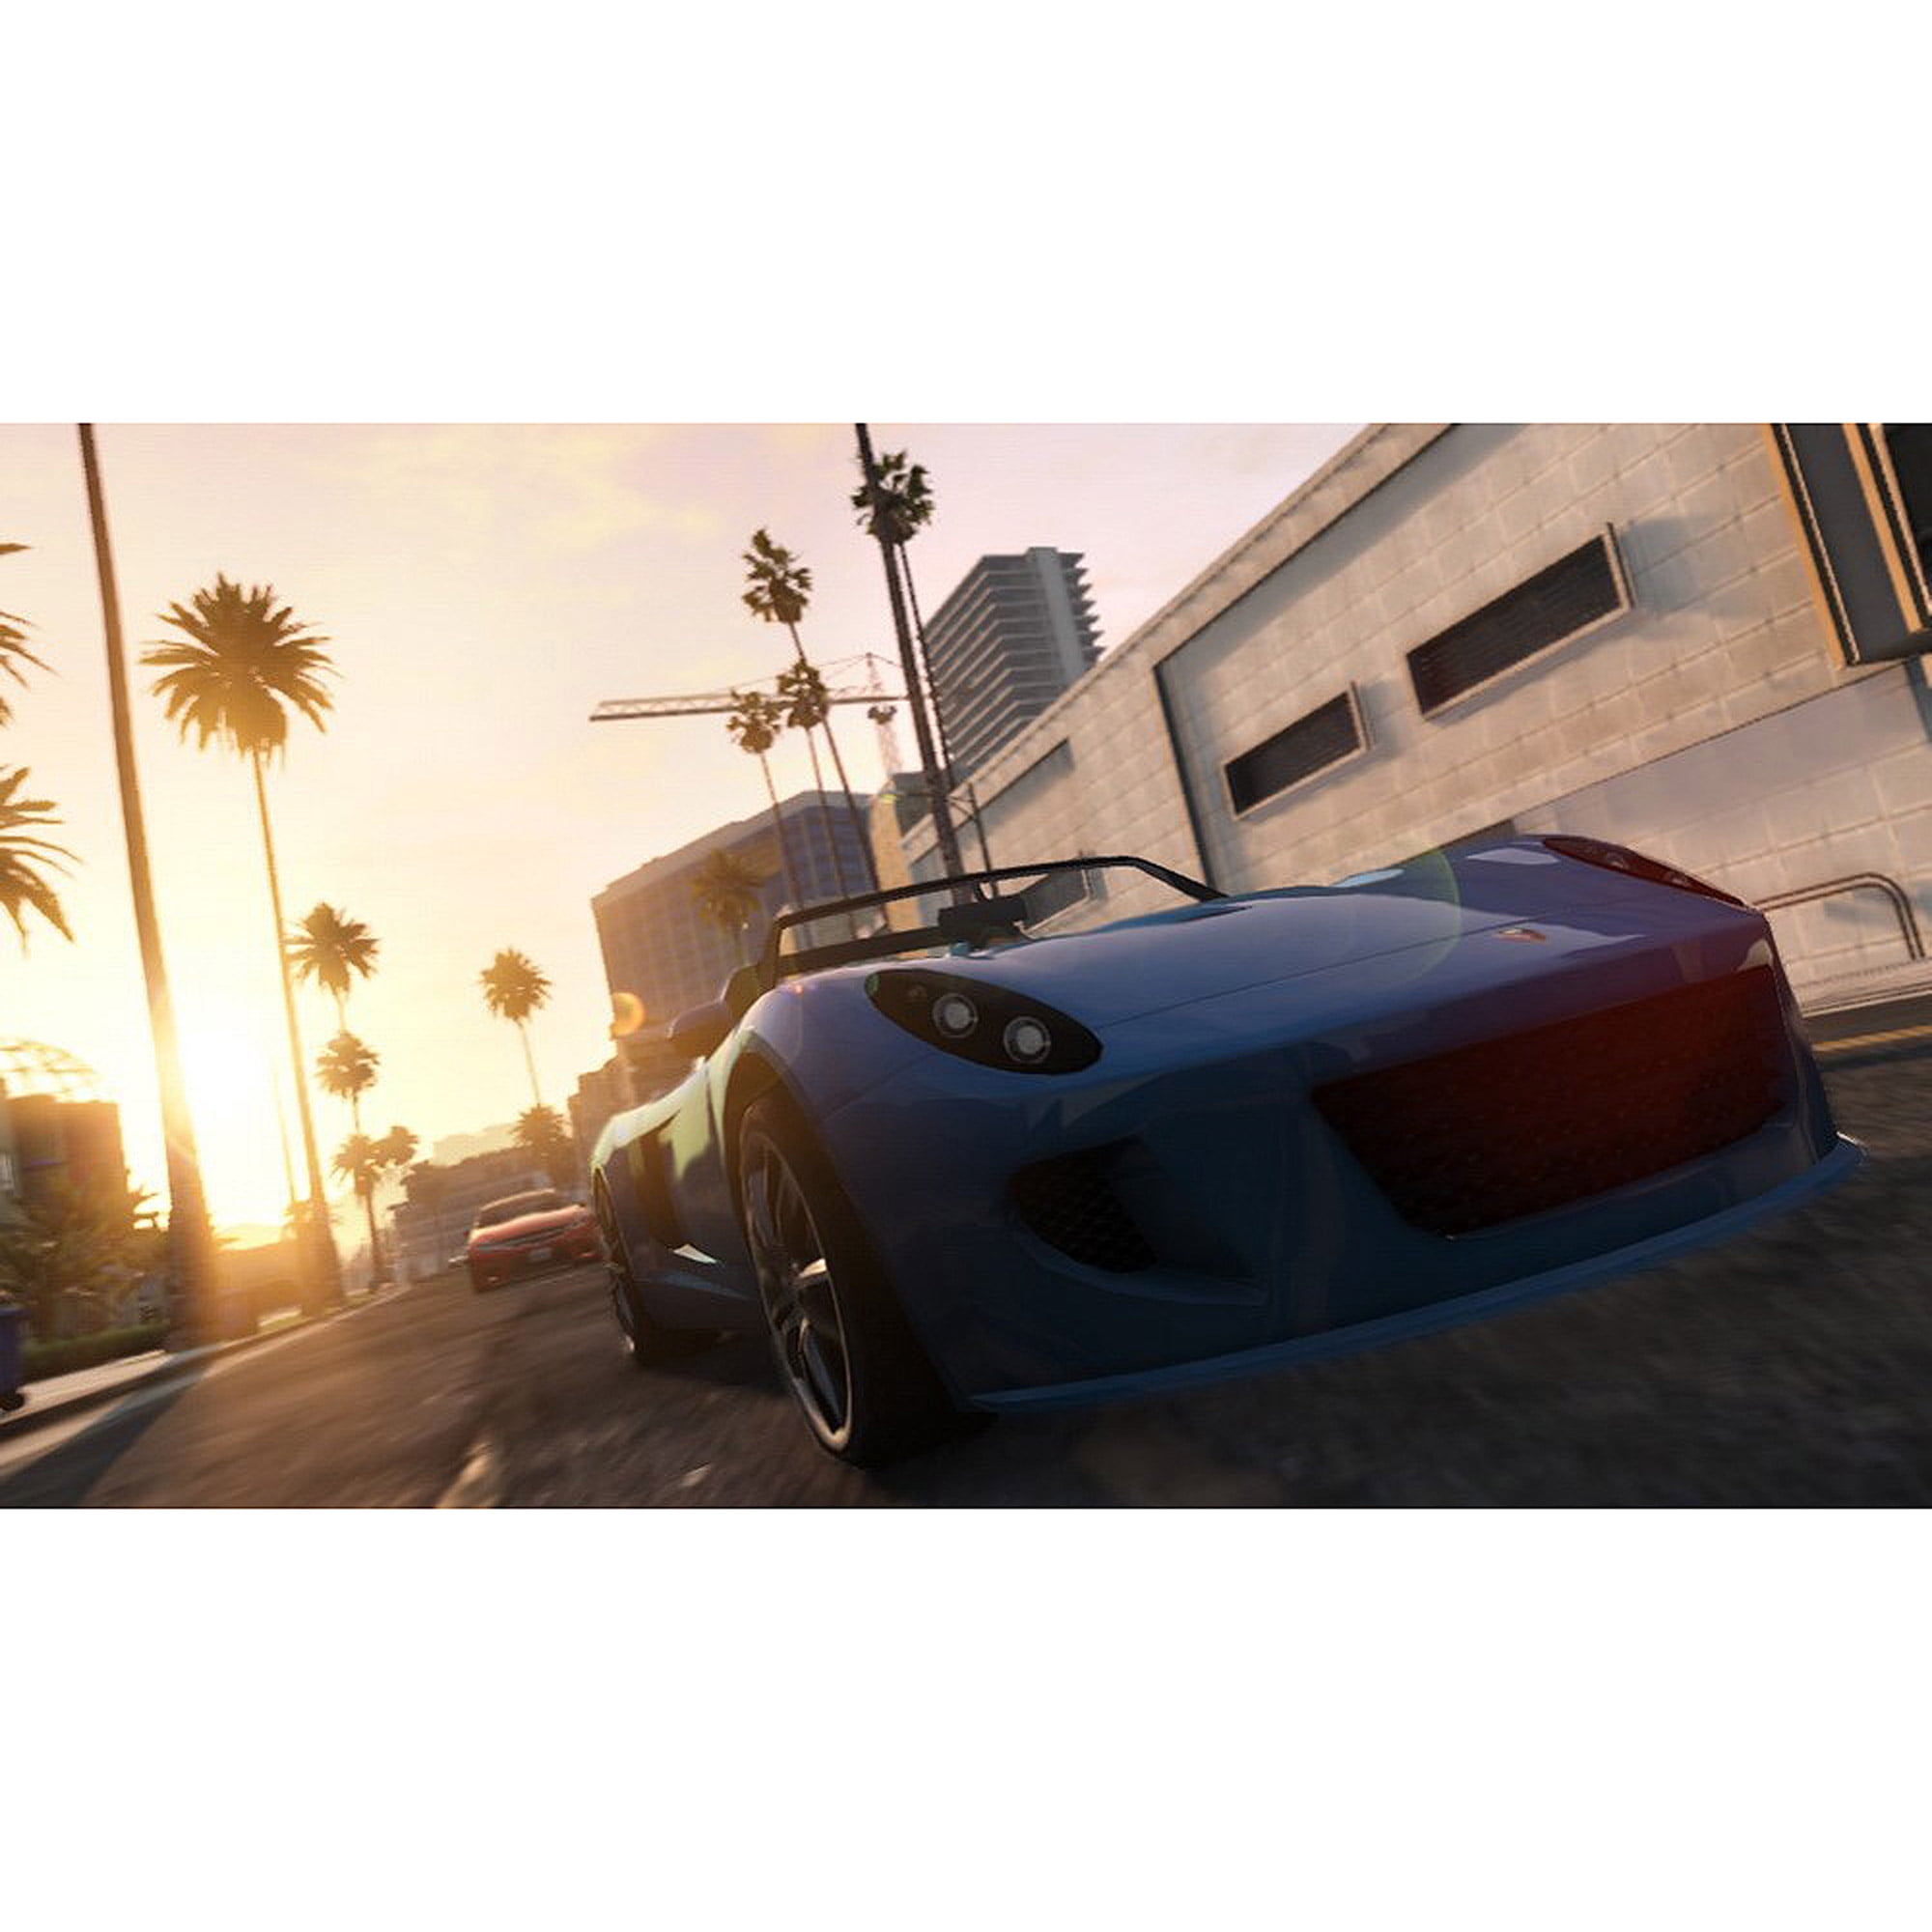 Grand Theft Auto V [w/videos] - Autoblog